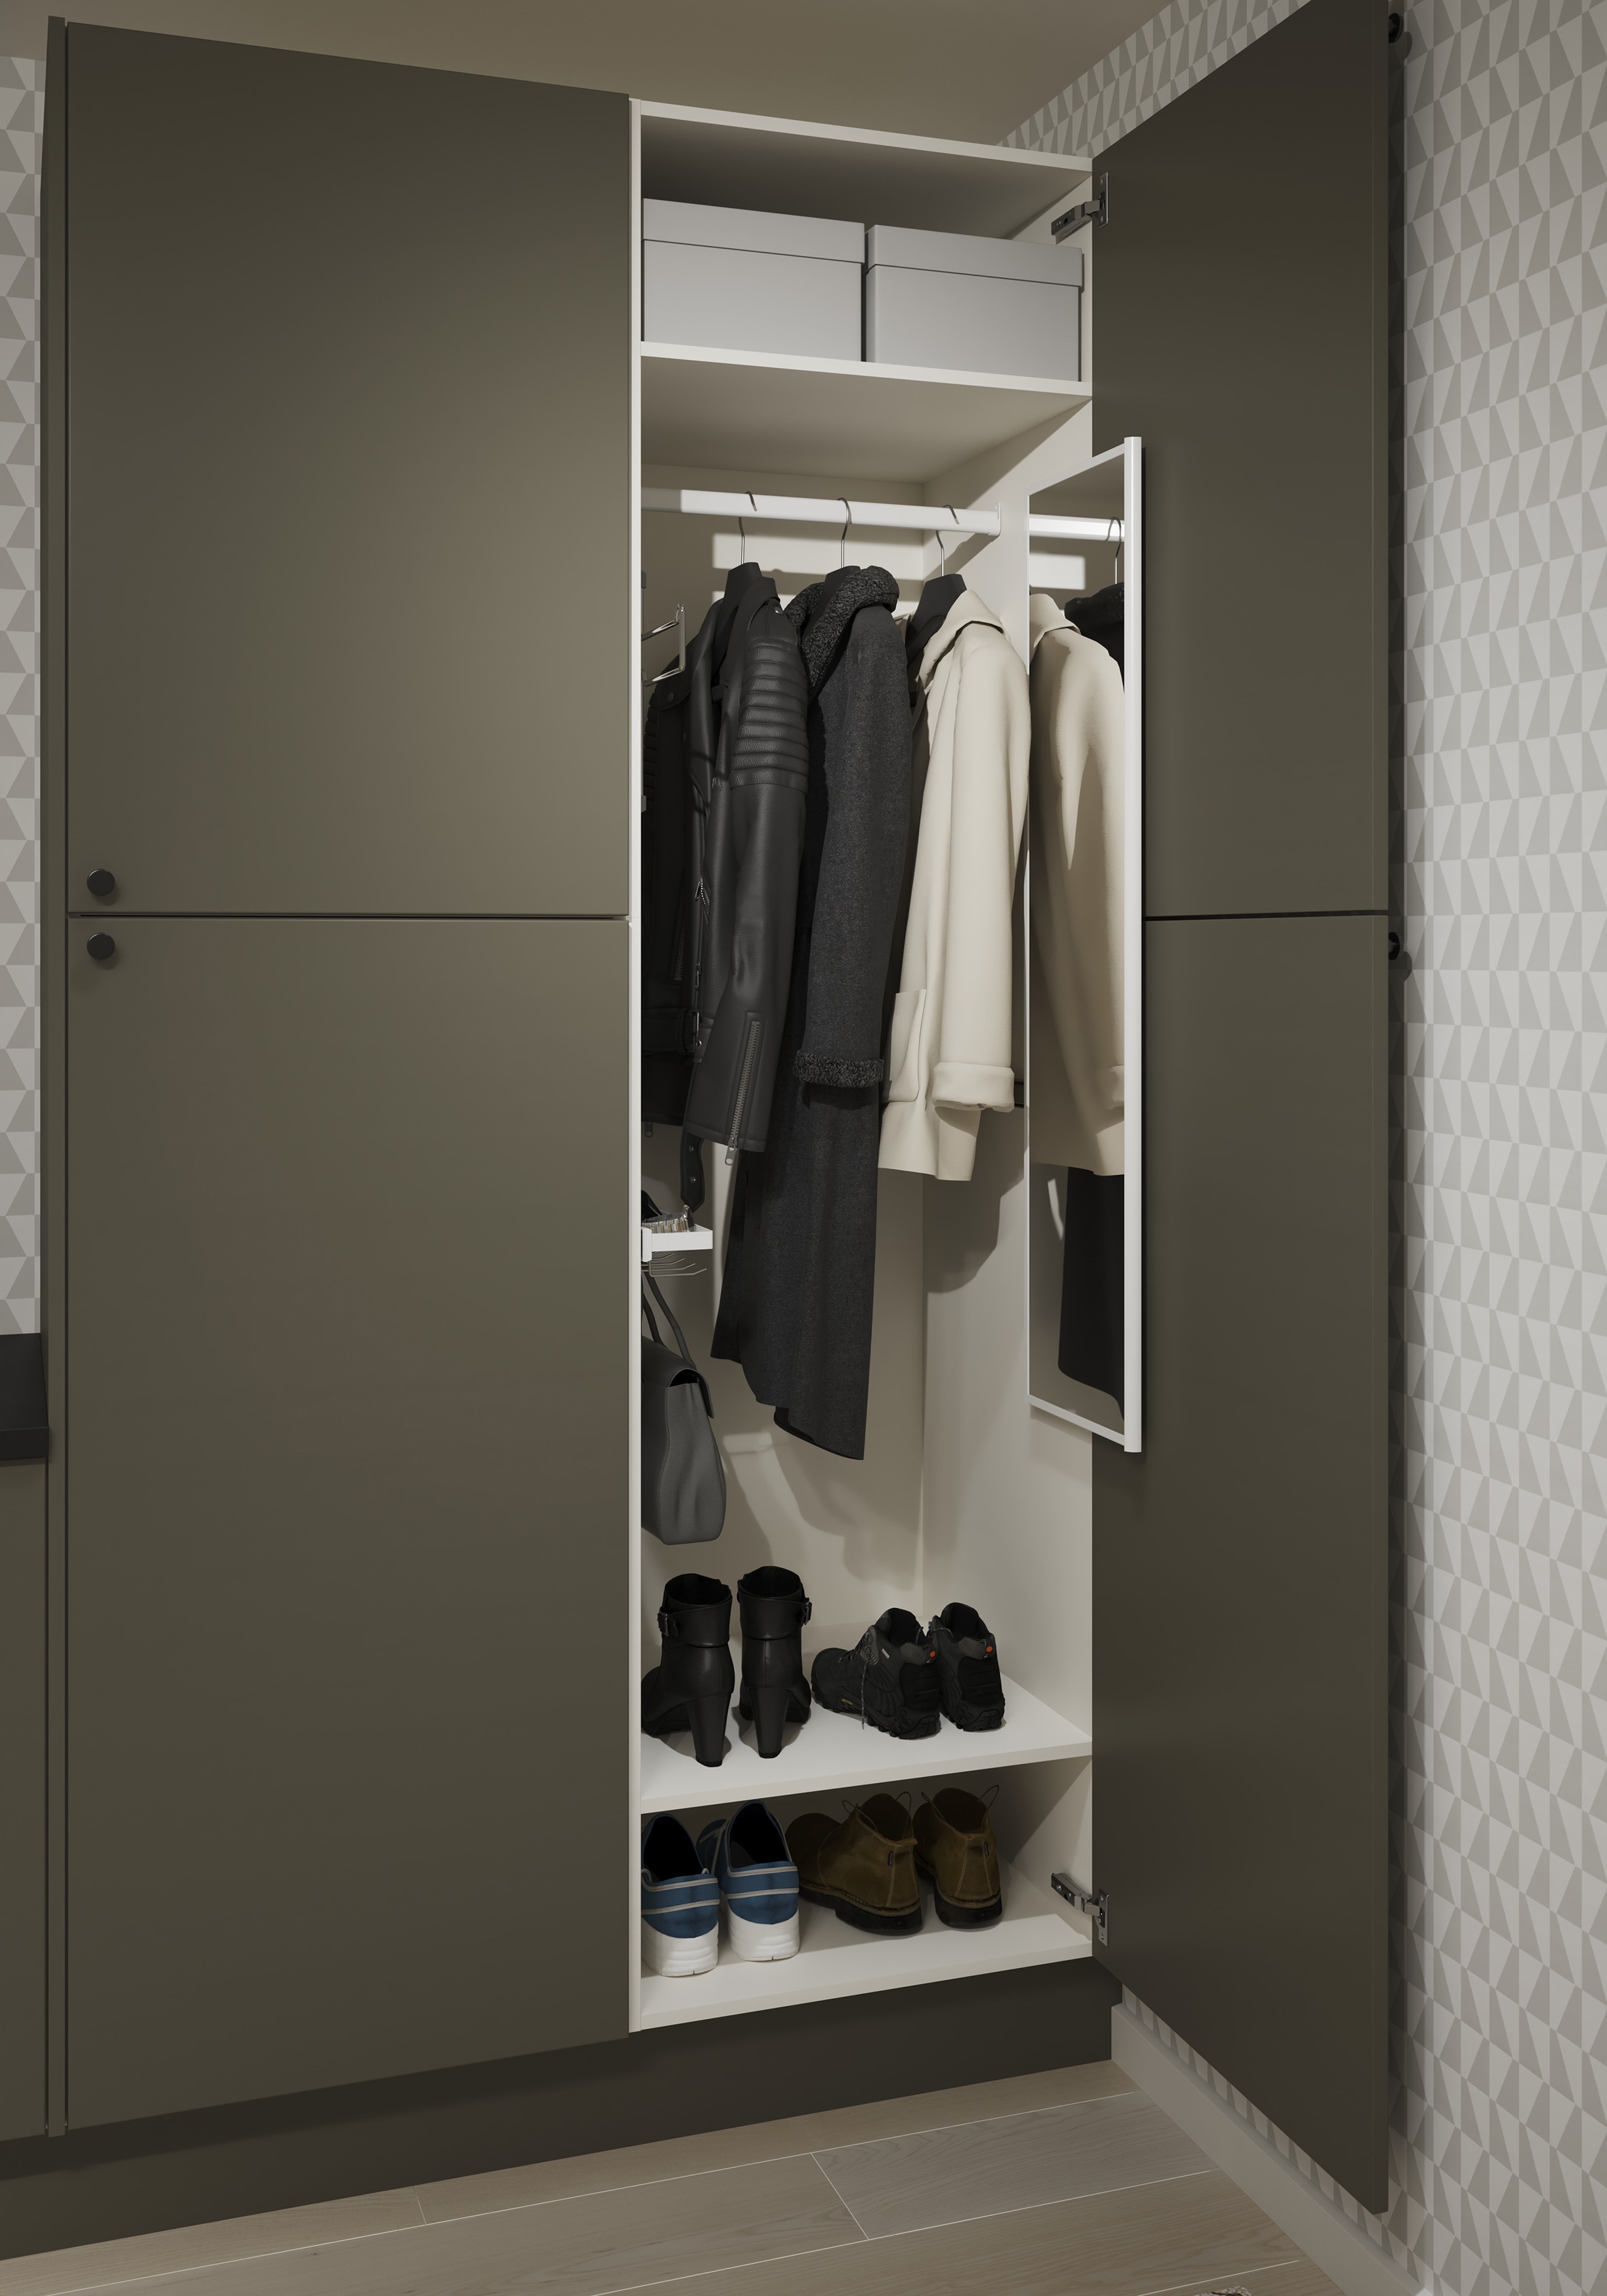 Epoq Trend Moss Green tvättstuga/entré: öppen garderob med kläder, skor och utdragbar spegel.